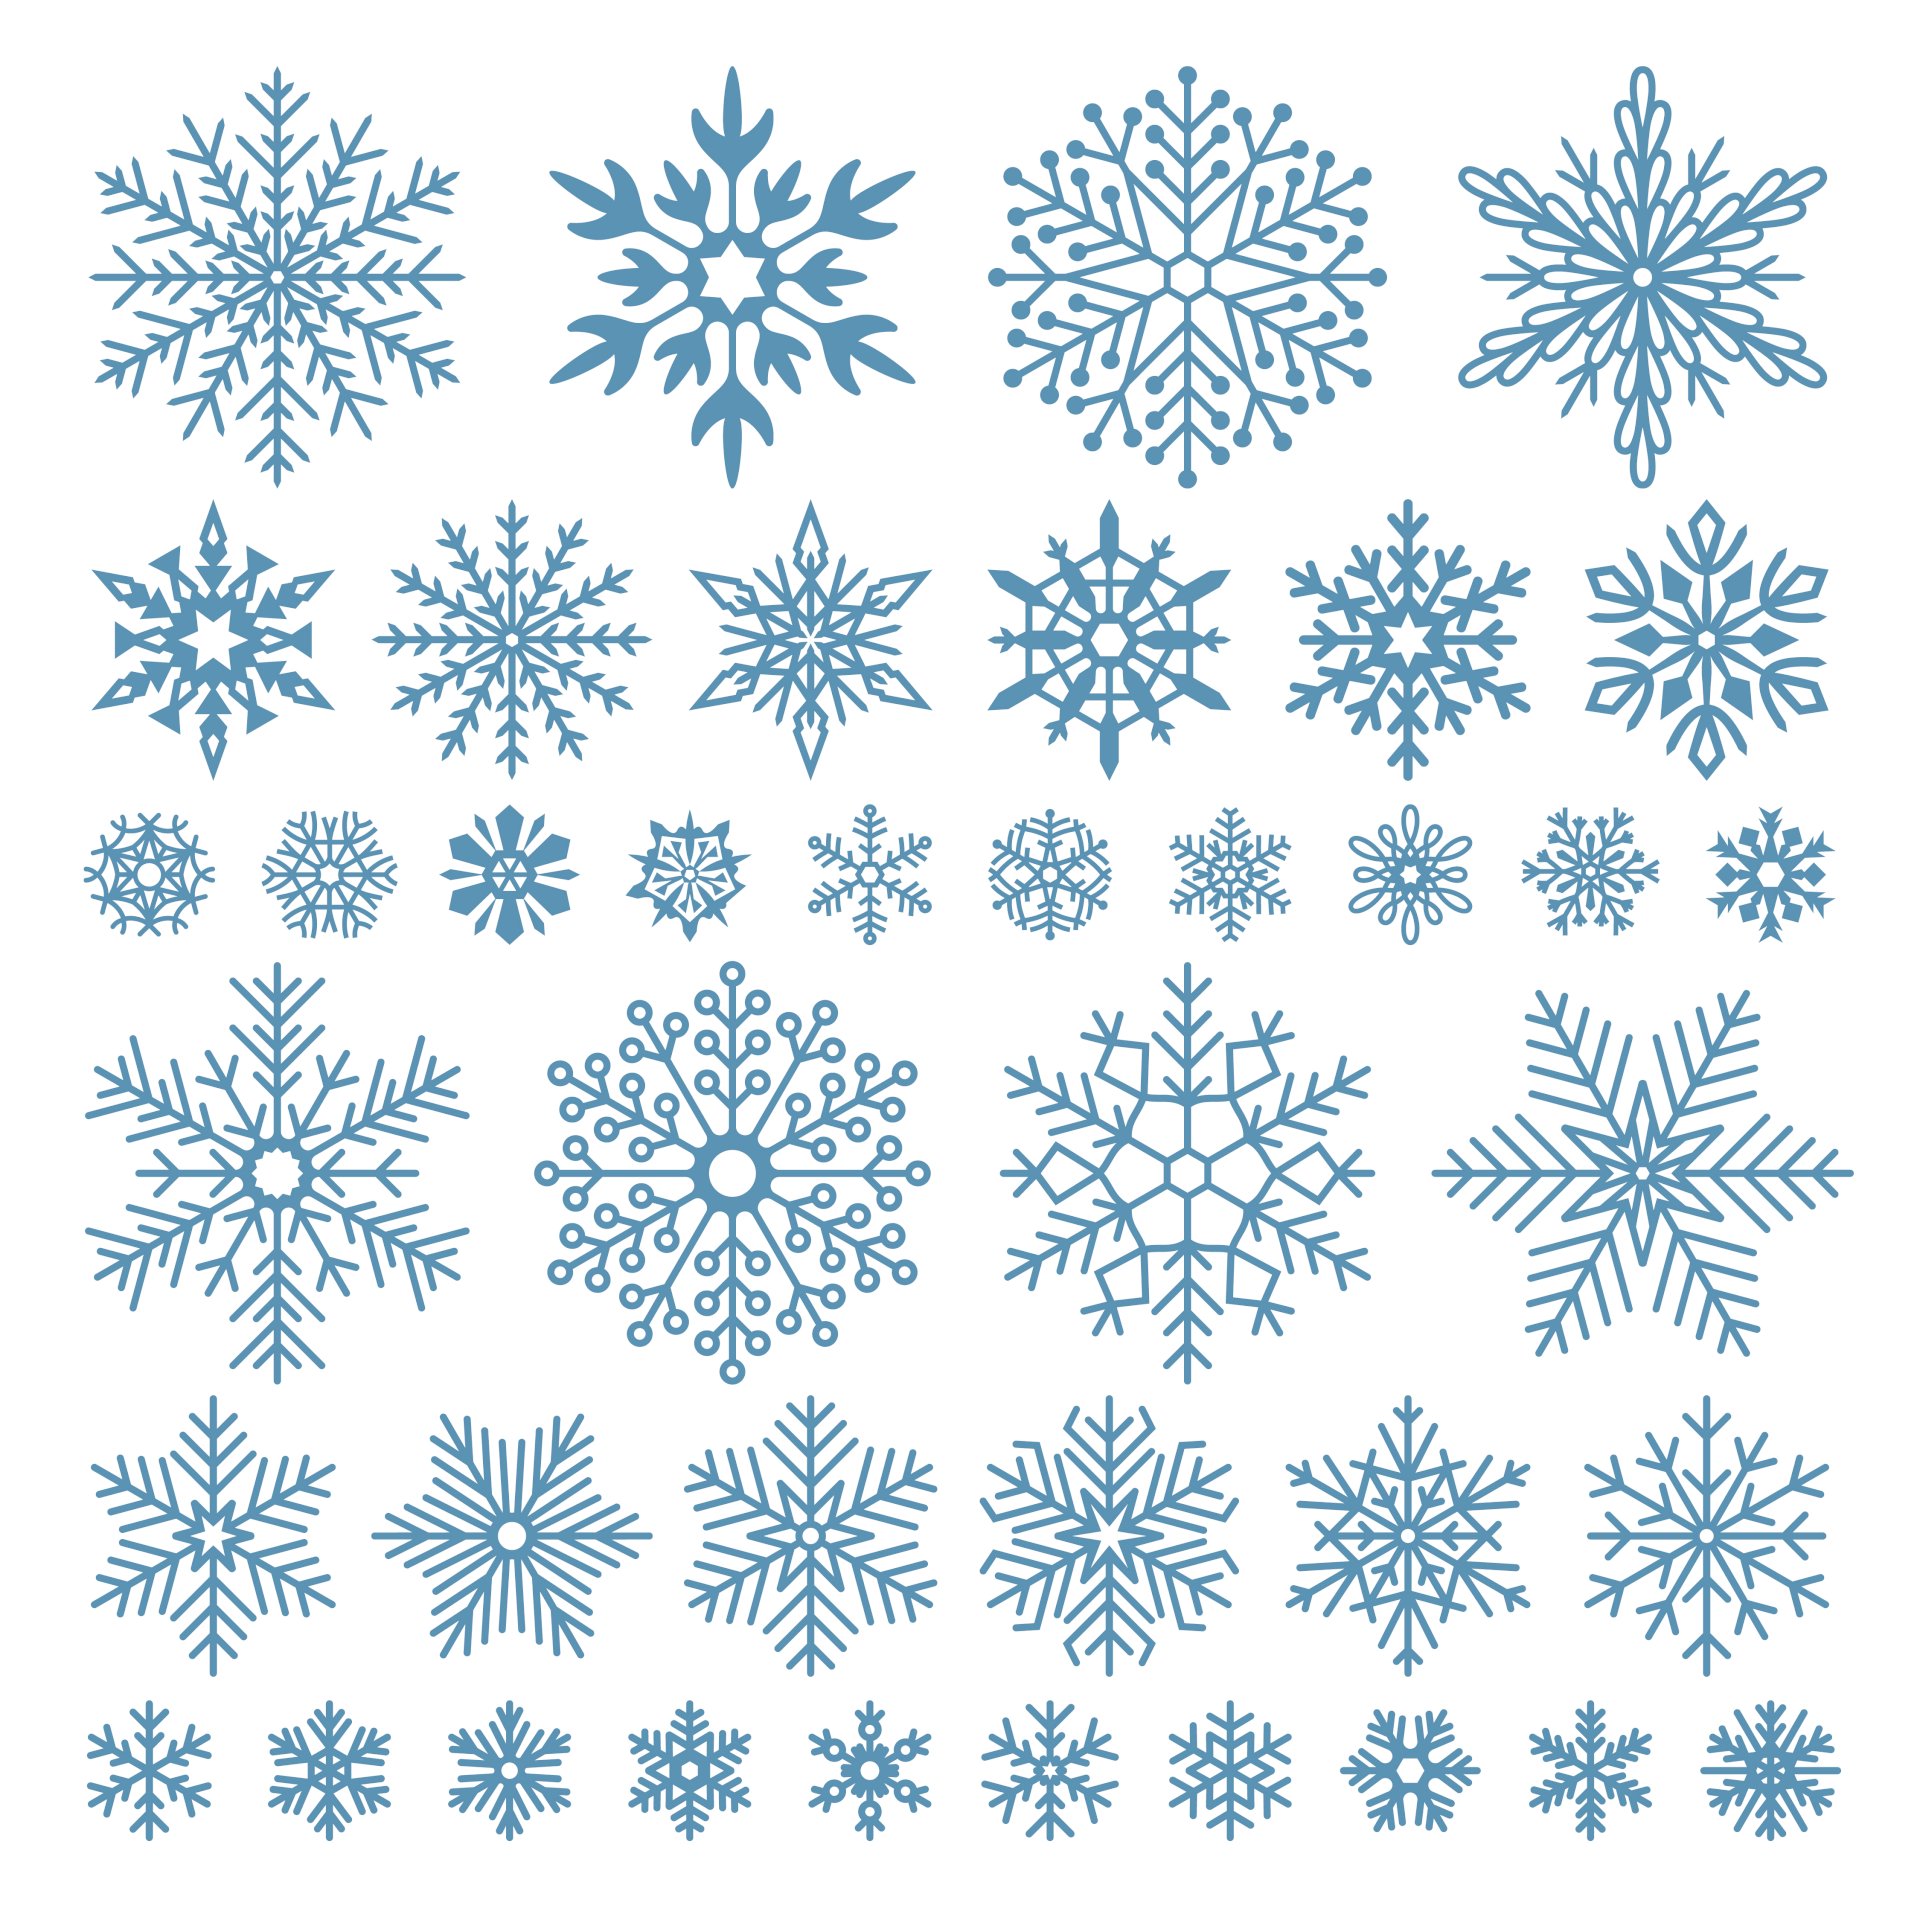 Bông tuyết: Hãy thưởng thức hình ảnh diệu kỳ về những bông tuyết độc đáo và đẹp mắt, mỗi bông tuyết đều có hình dáng và hoa văn riêng biệt khiến bạn không thể rời mắt.